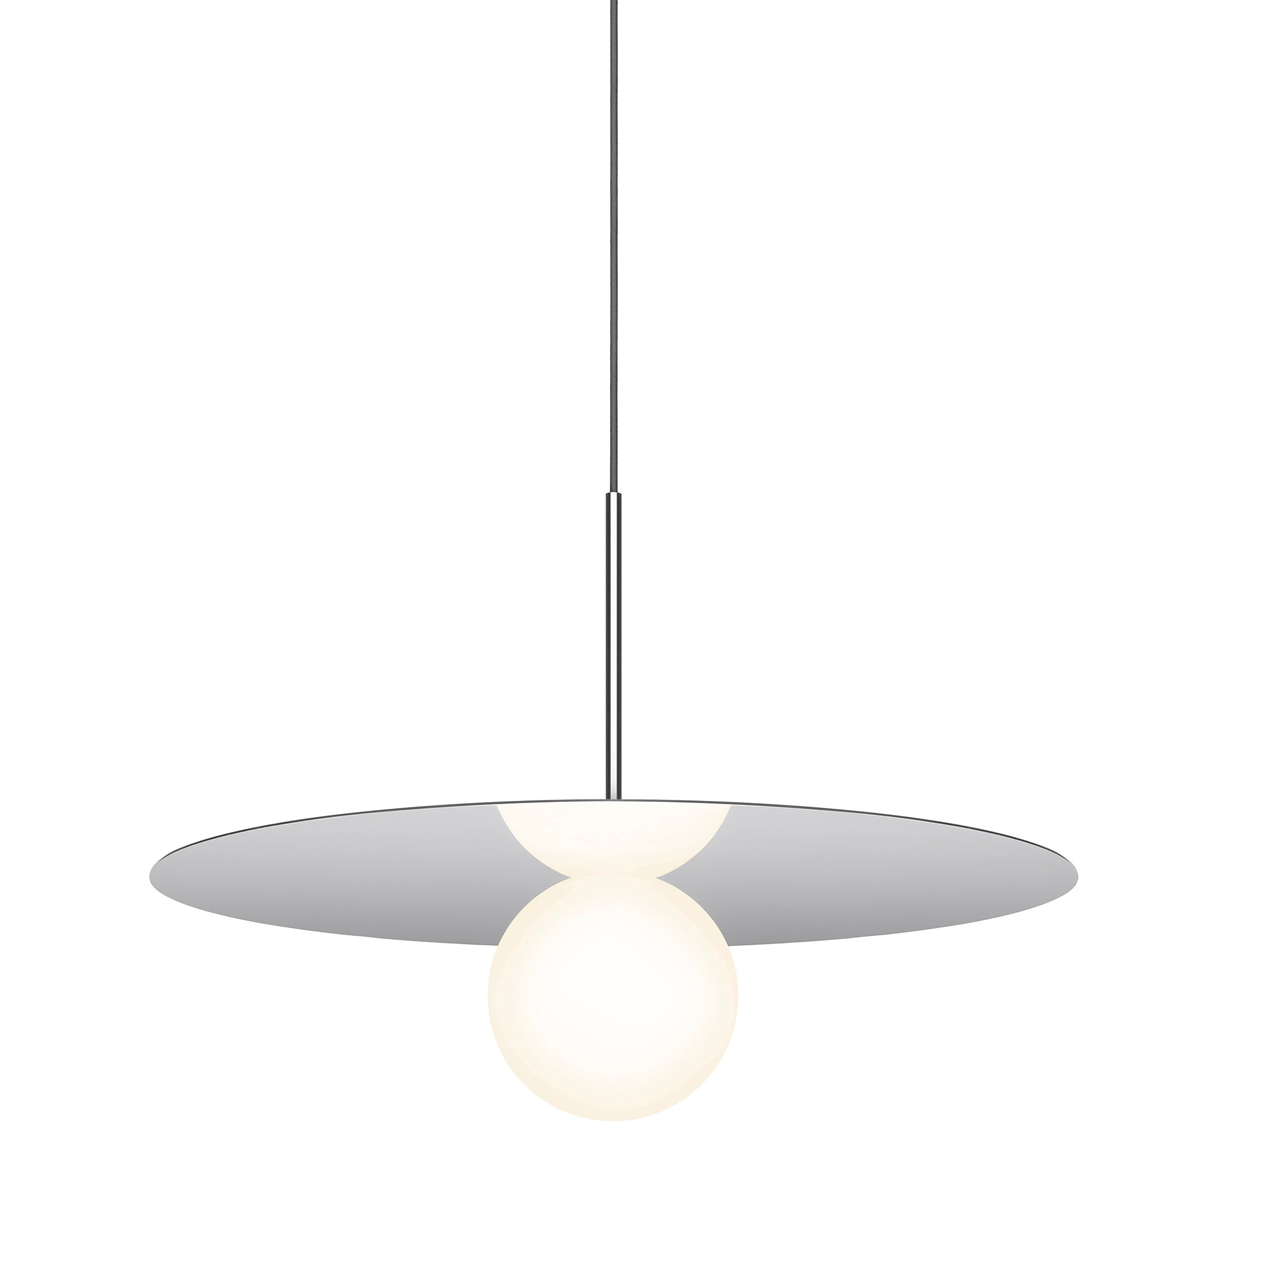 Pablo Designs Bola Disc, lampe suspendue LED avec un globe en verre et un abat-jour en forme de disque, en aluminium, chrome, 22ʼʼ